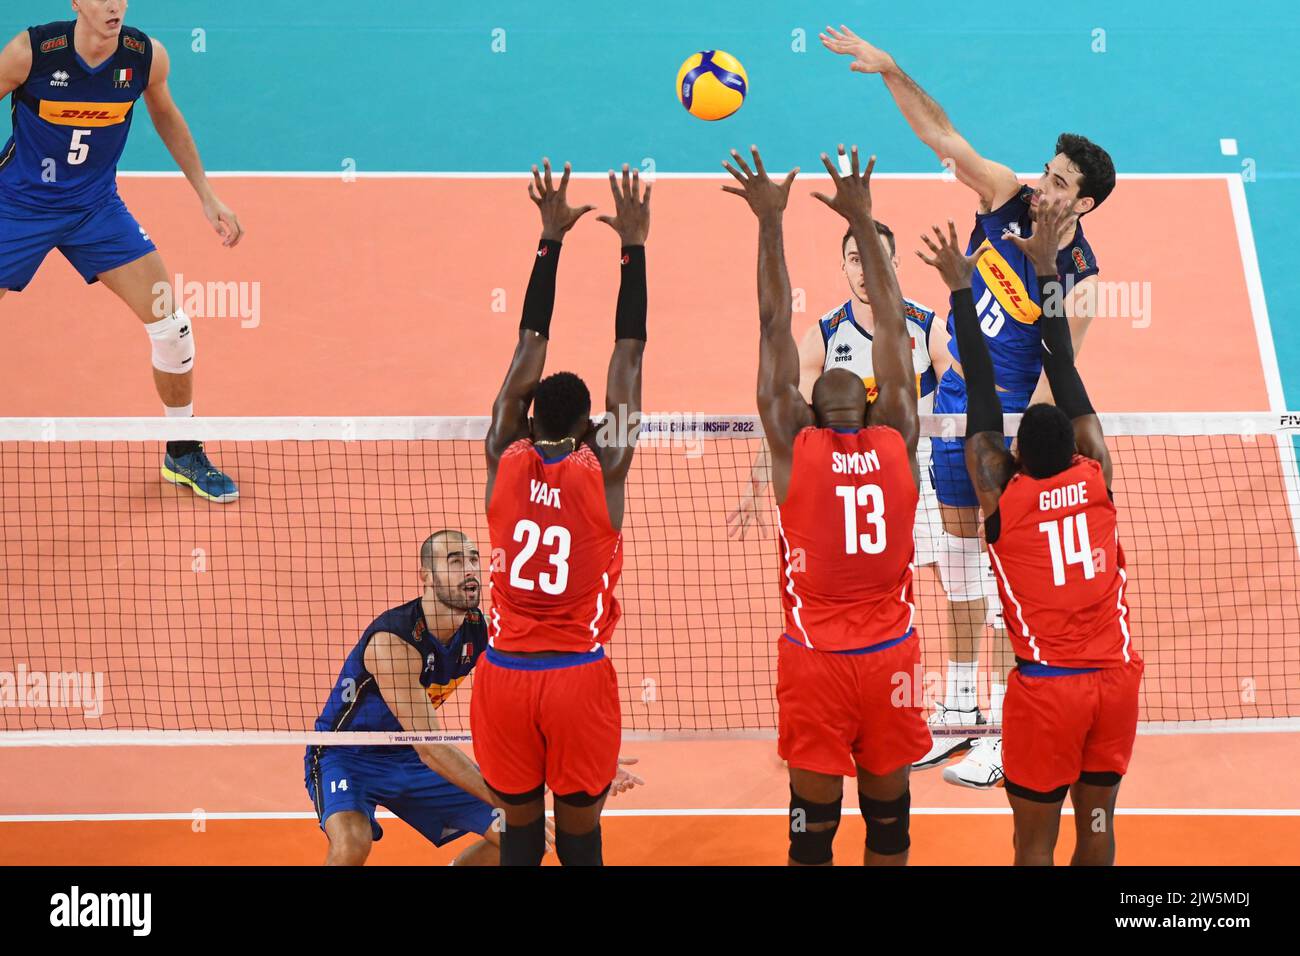 Daniele Lavia (Italie) ; Marlon Yant, Robertlandy Simon, Adrian Goide (Cuba). Championnat du monde de volleyball 2022. Banque D'Images